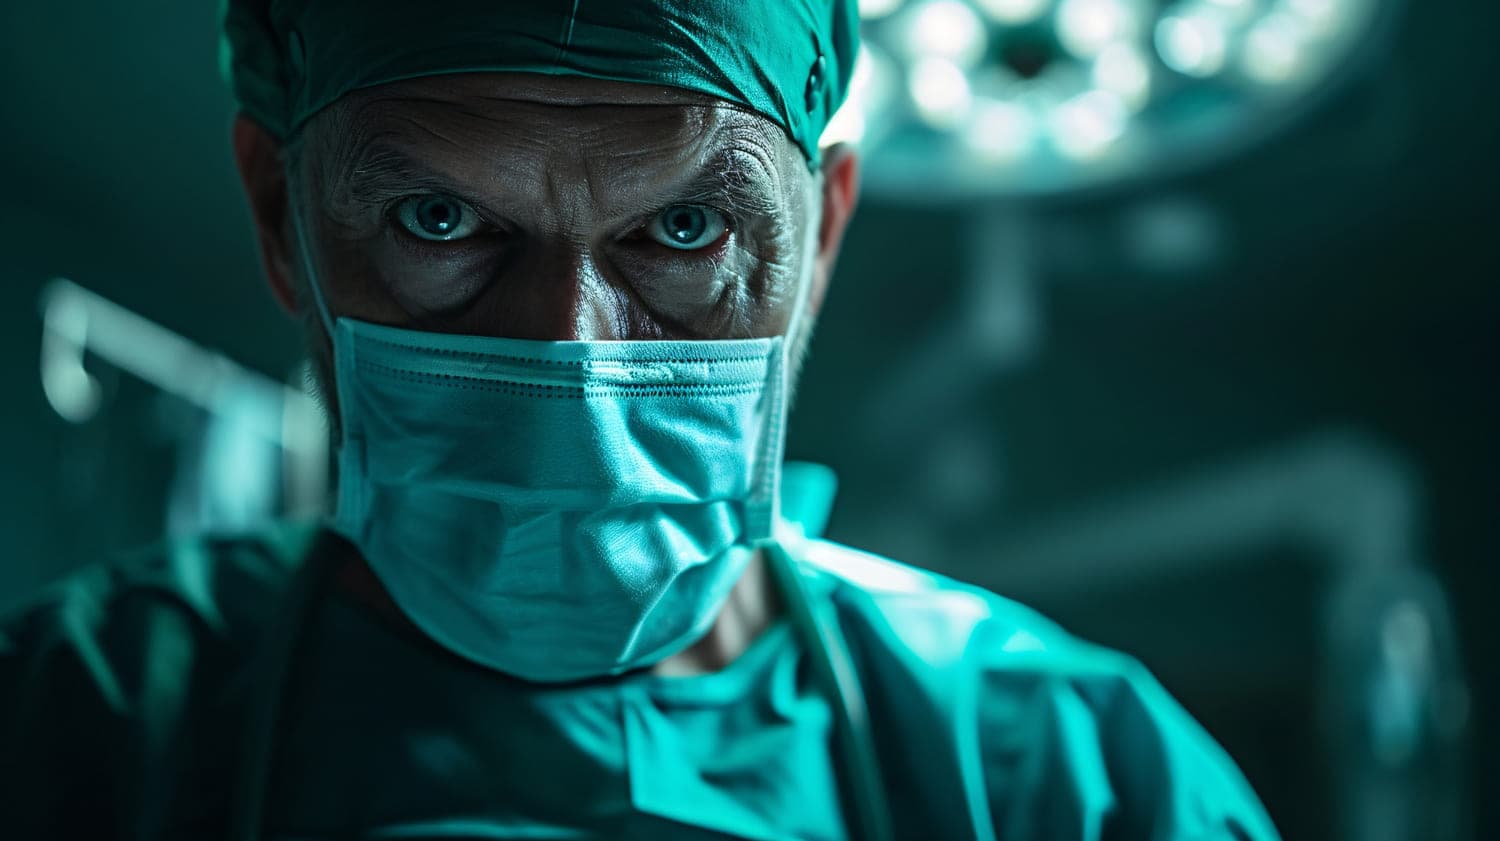 В Чехии врачи во время операции забыли в мужчине хирургическую маску